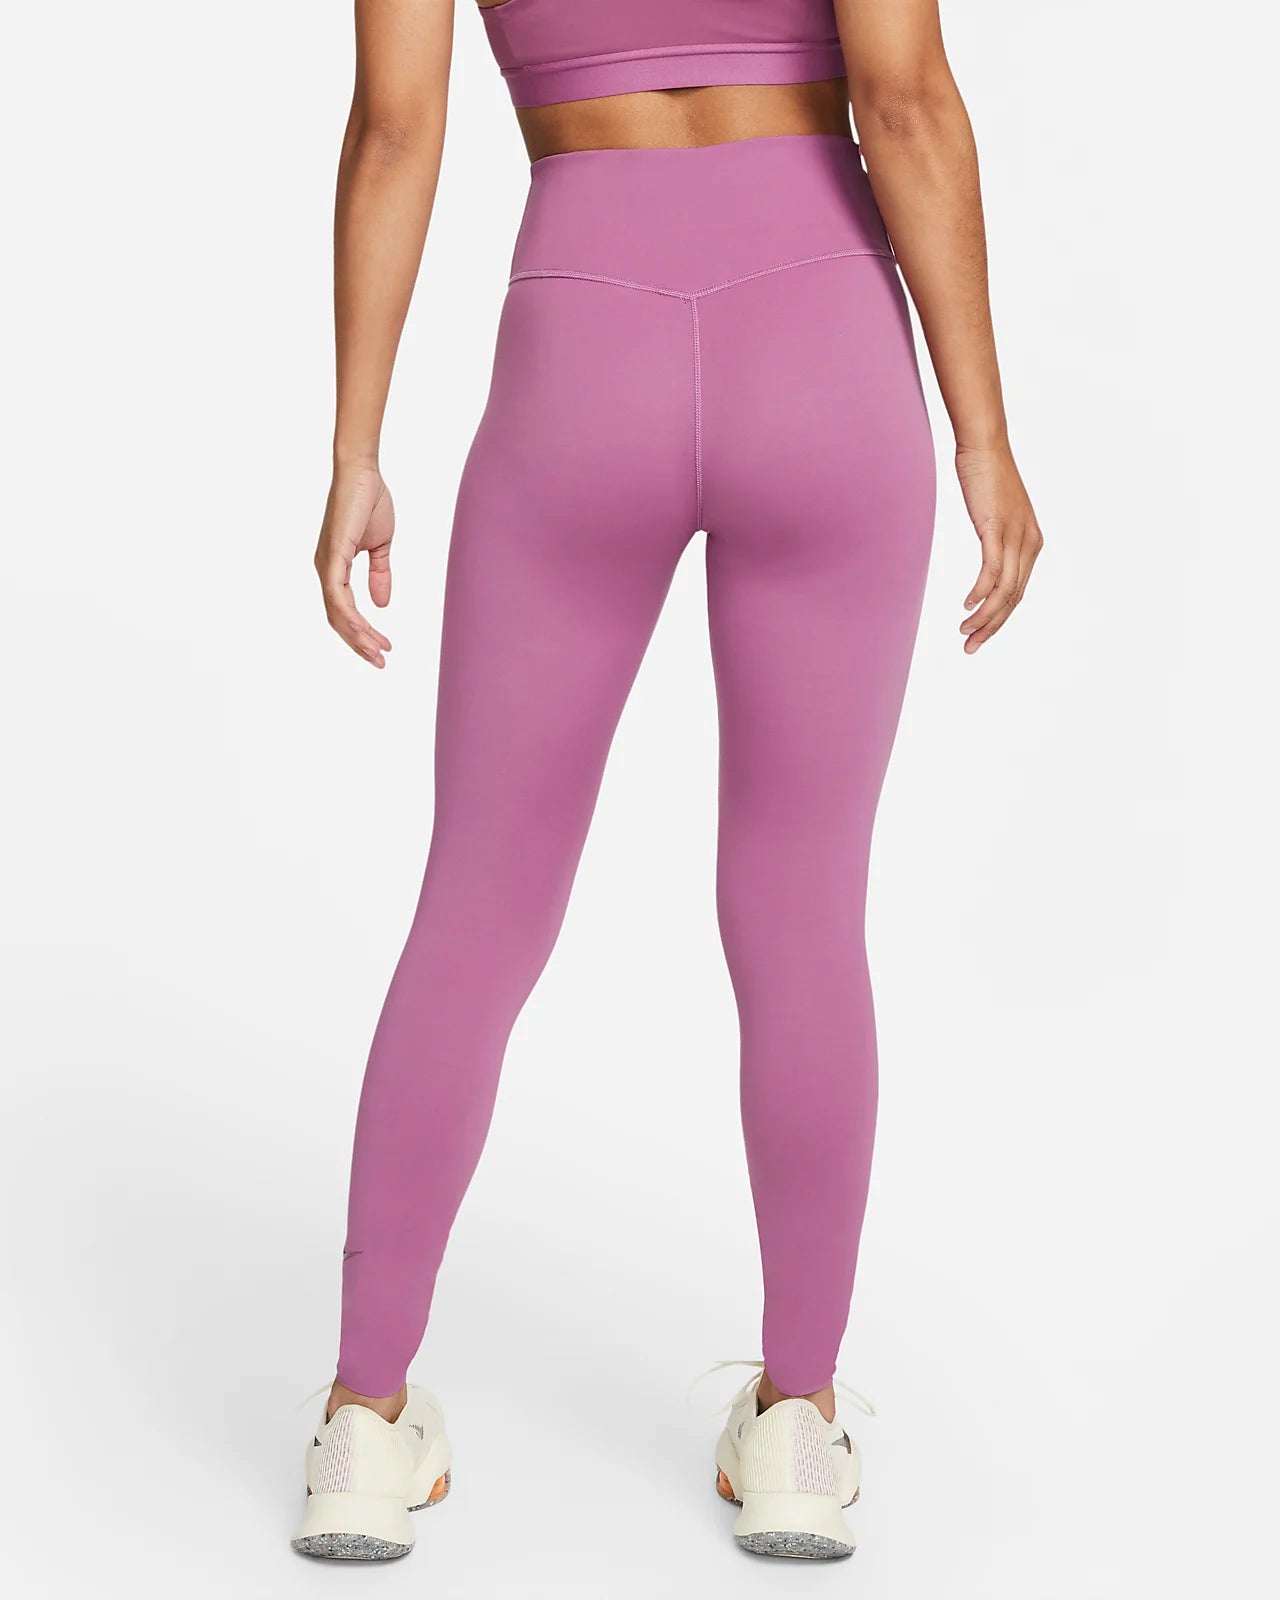 Nike Women’s One Luxe Leggings - Pink